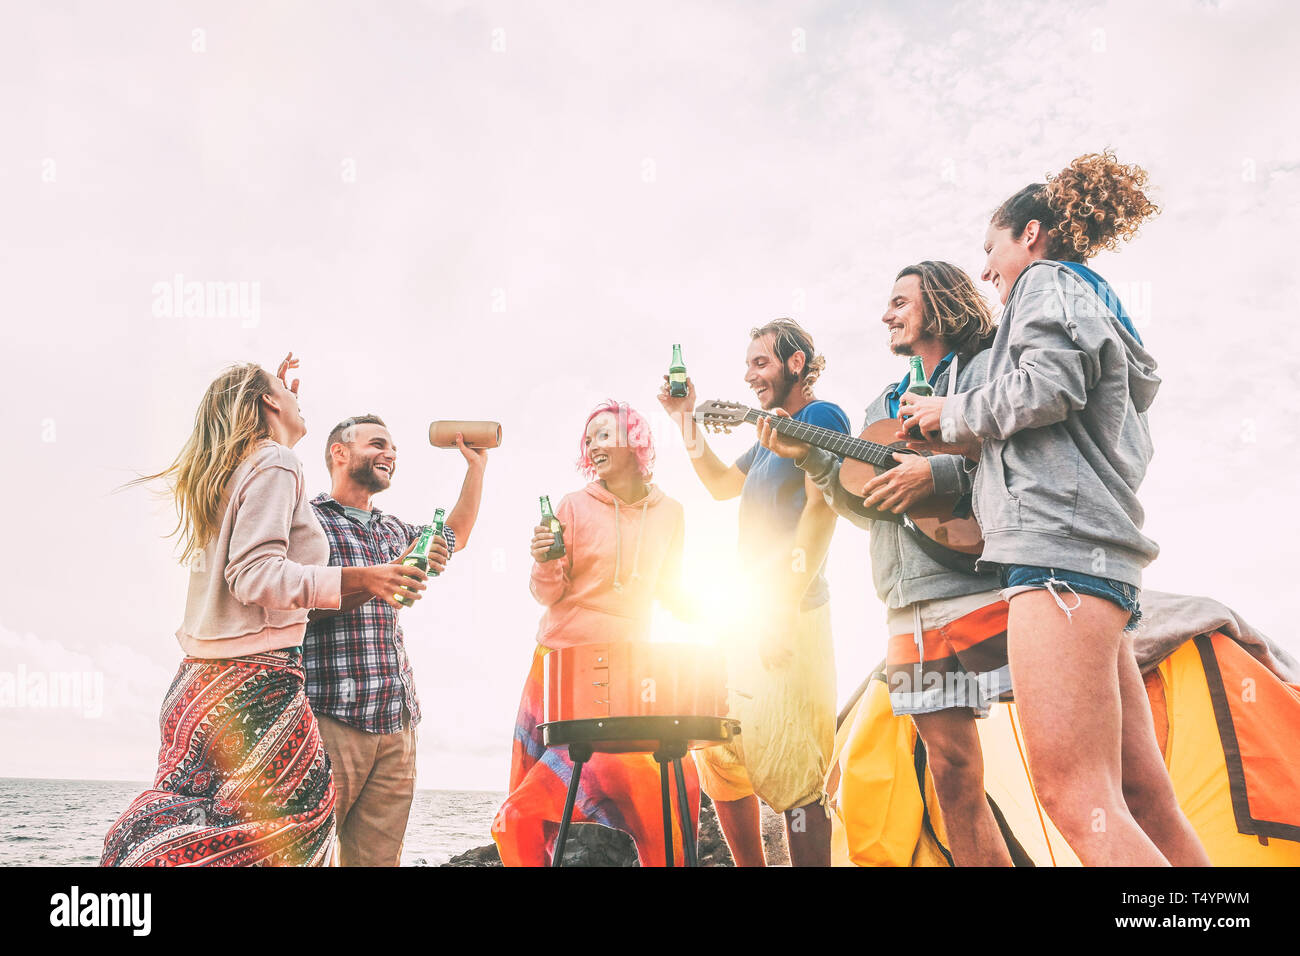 Eine Gruppe von Freunden mit Grill trinken Bier beim Camping am Strand - glückliche Menschen genießen Camp bbq Gitarre spielen und Musik hören Stockfoto